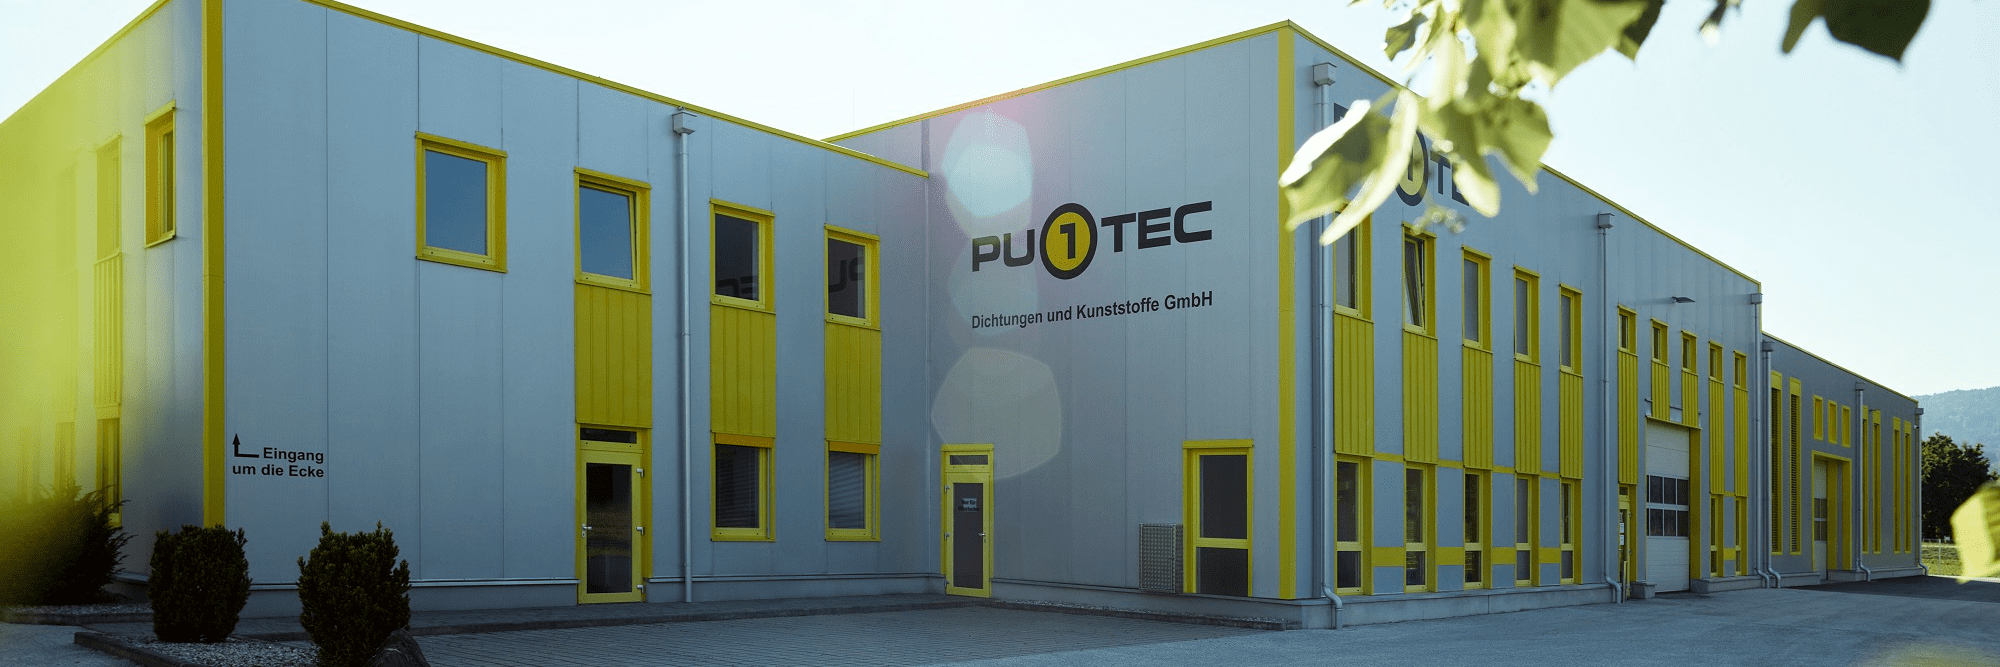 PU1TEC Dichtungen und Kunststoffe GmbH